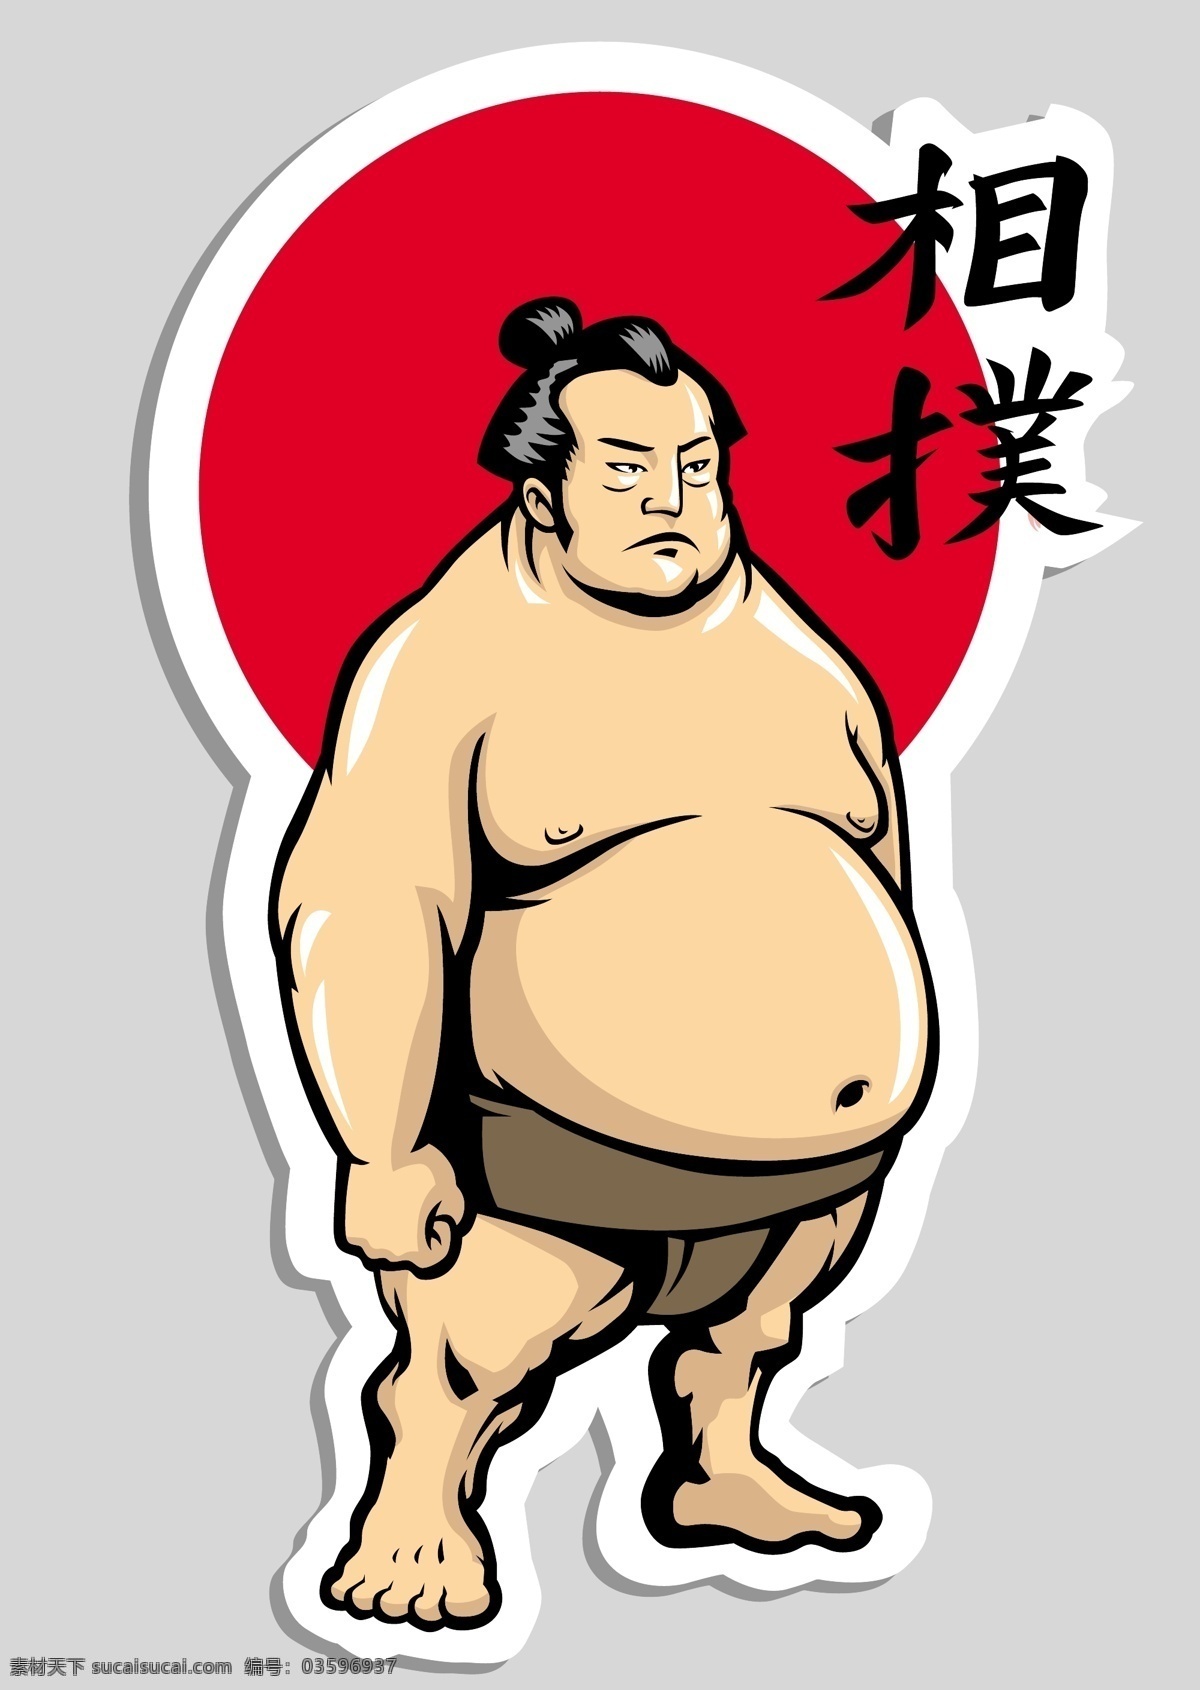 相扑选手 相扑人物 日式 日式素材 日本建筑 樱花 东洋 寿司 日本食物 忍者 刺客 艺妓 美女 和服 日式风格素材 动漫动画 动漫人物